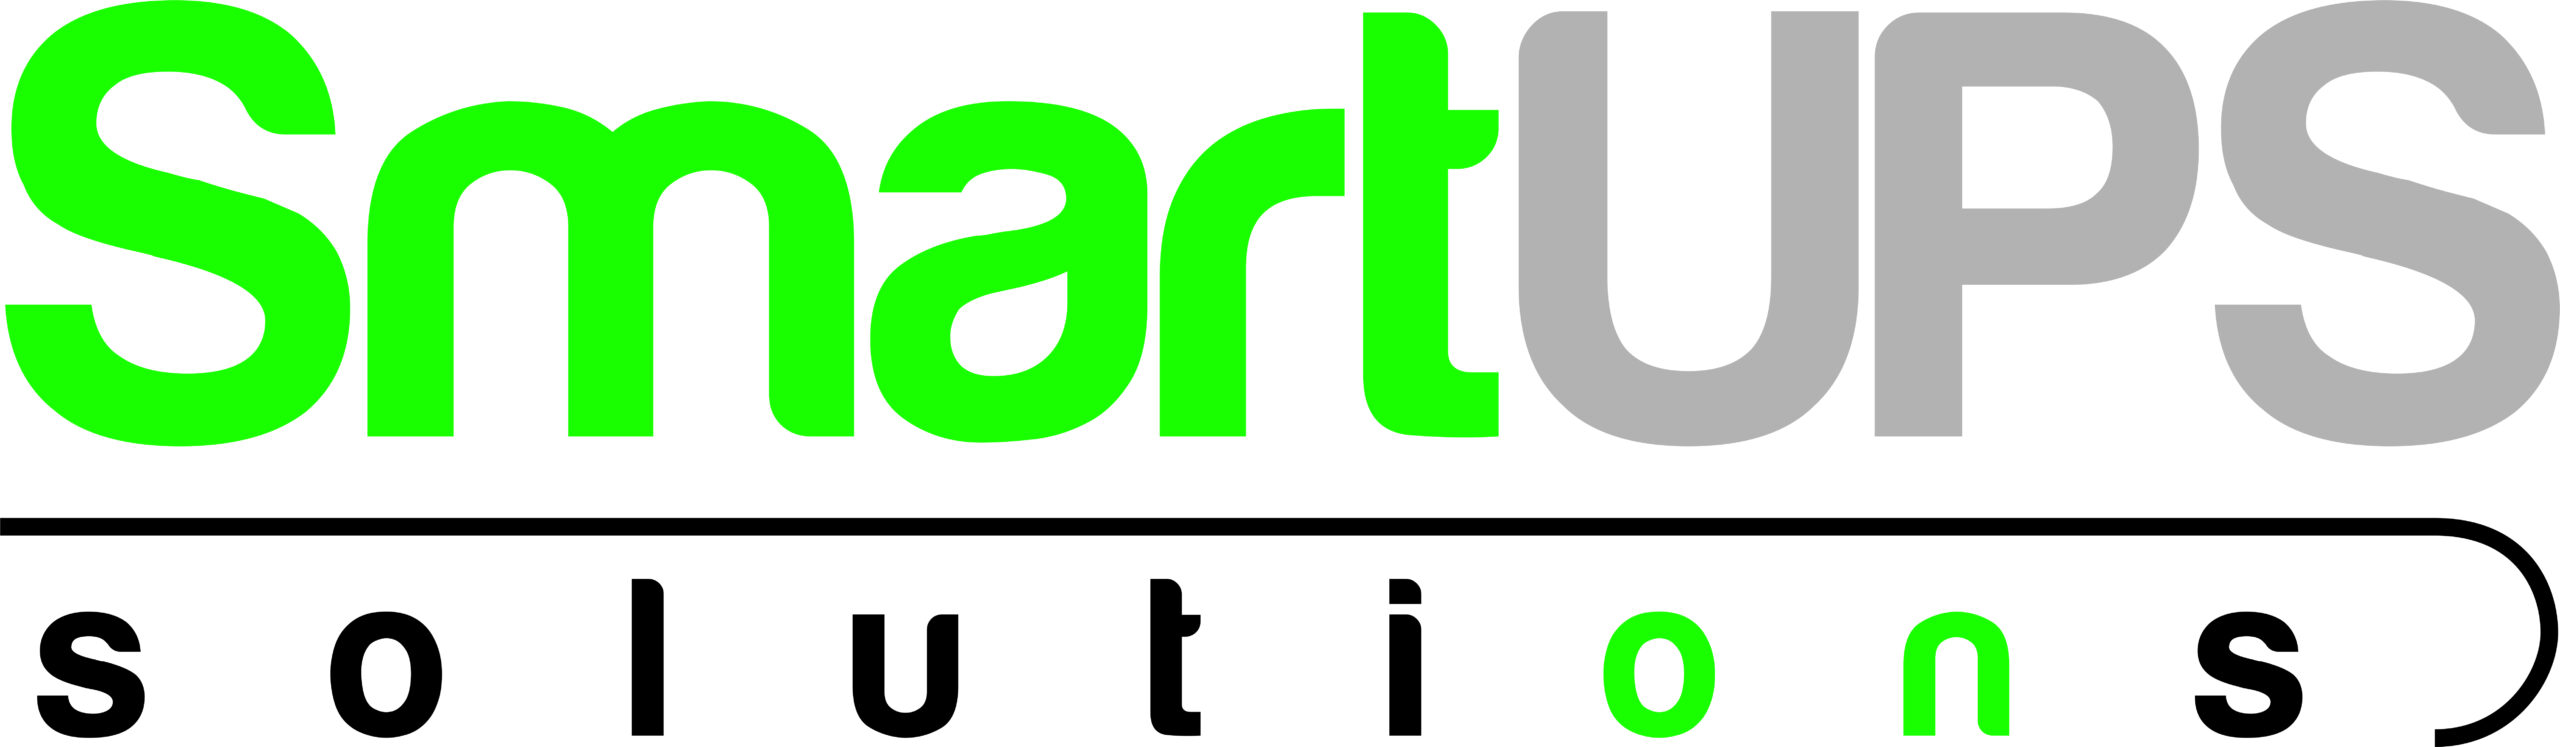 Logo_SmartUPSSolutions_alta-resolucao.jpg